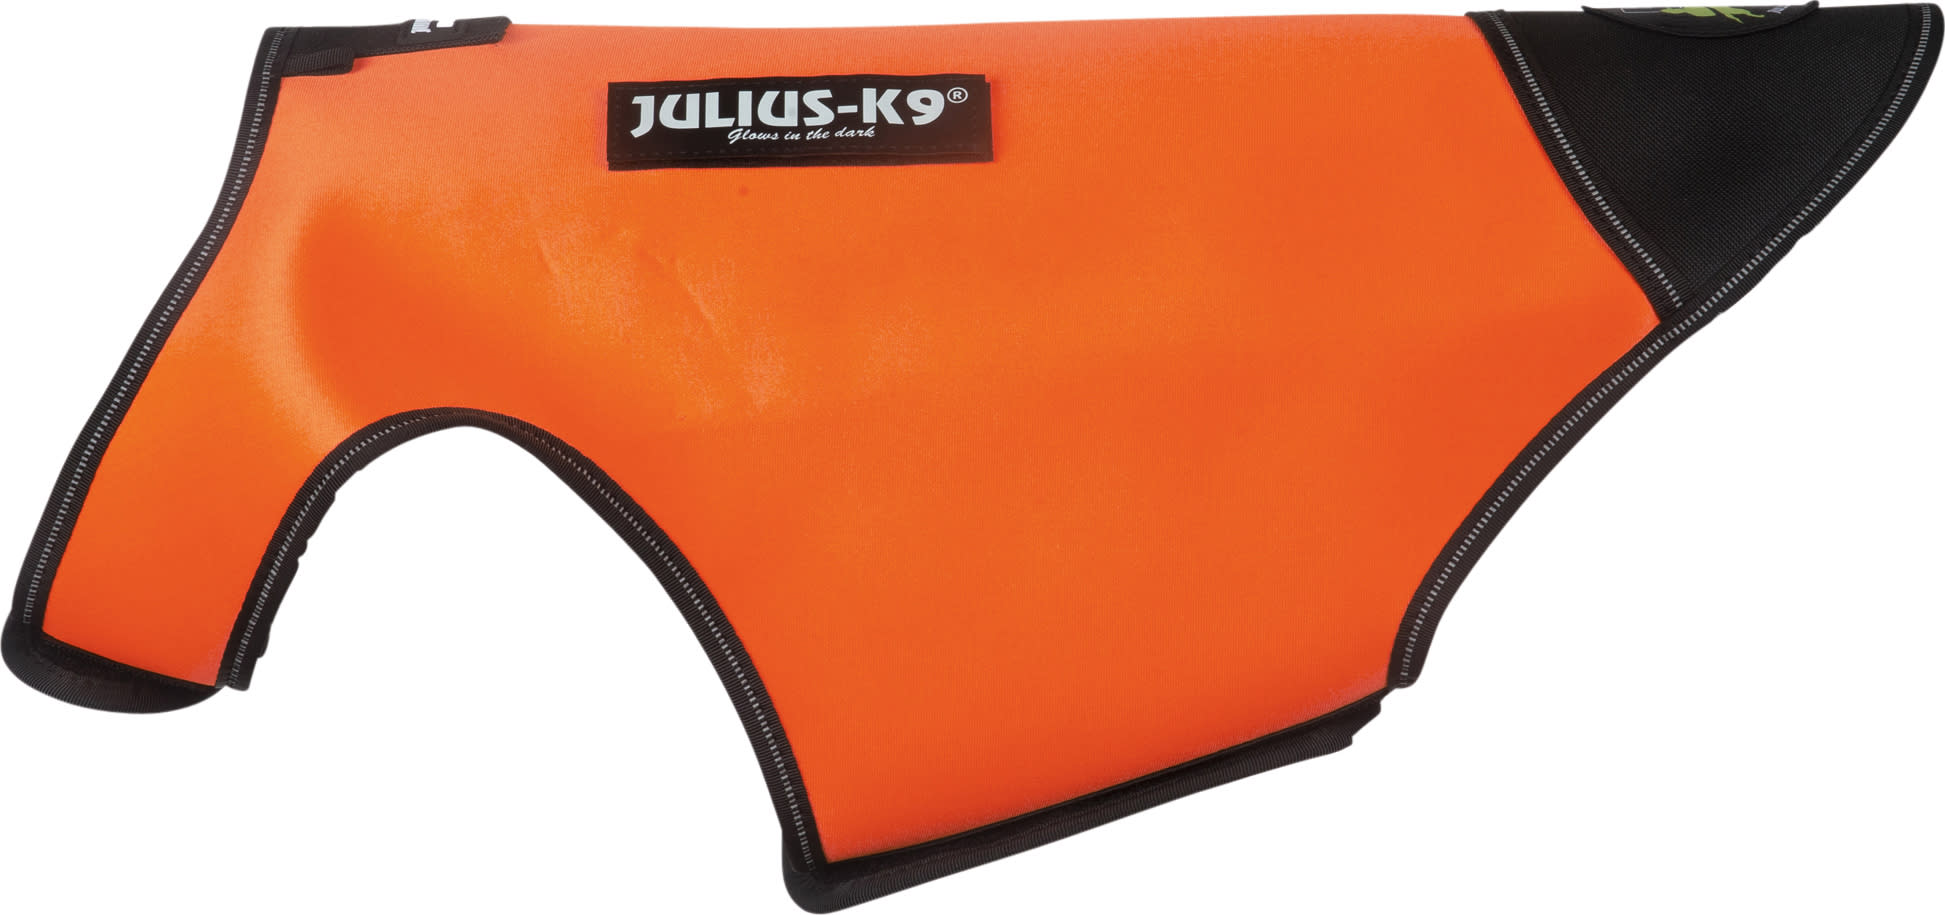 Julius-K9 Neoprene Idc Dog Jacket UV L Orange